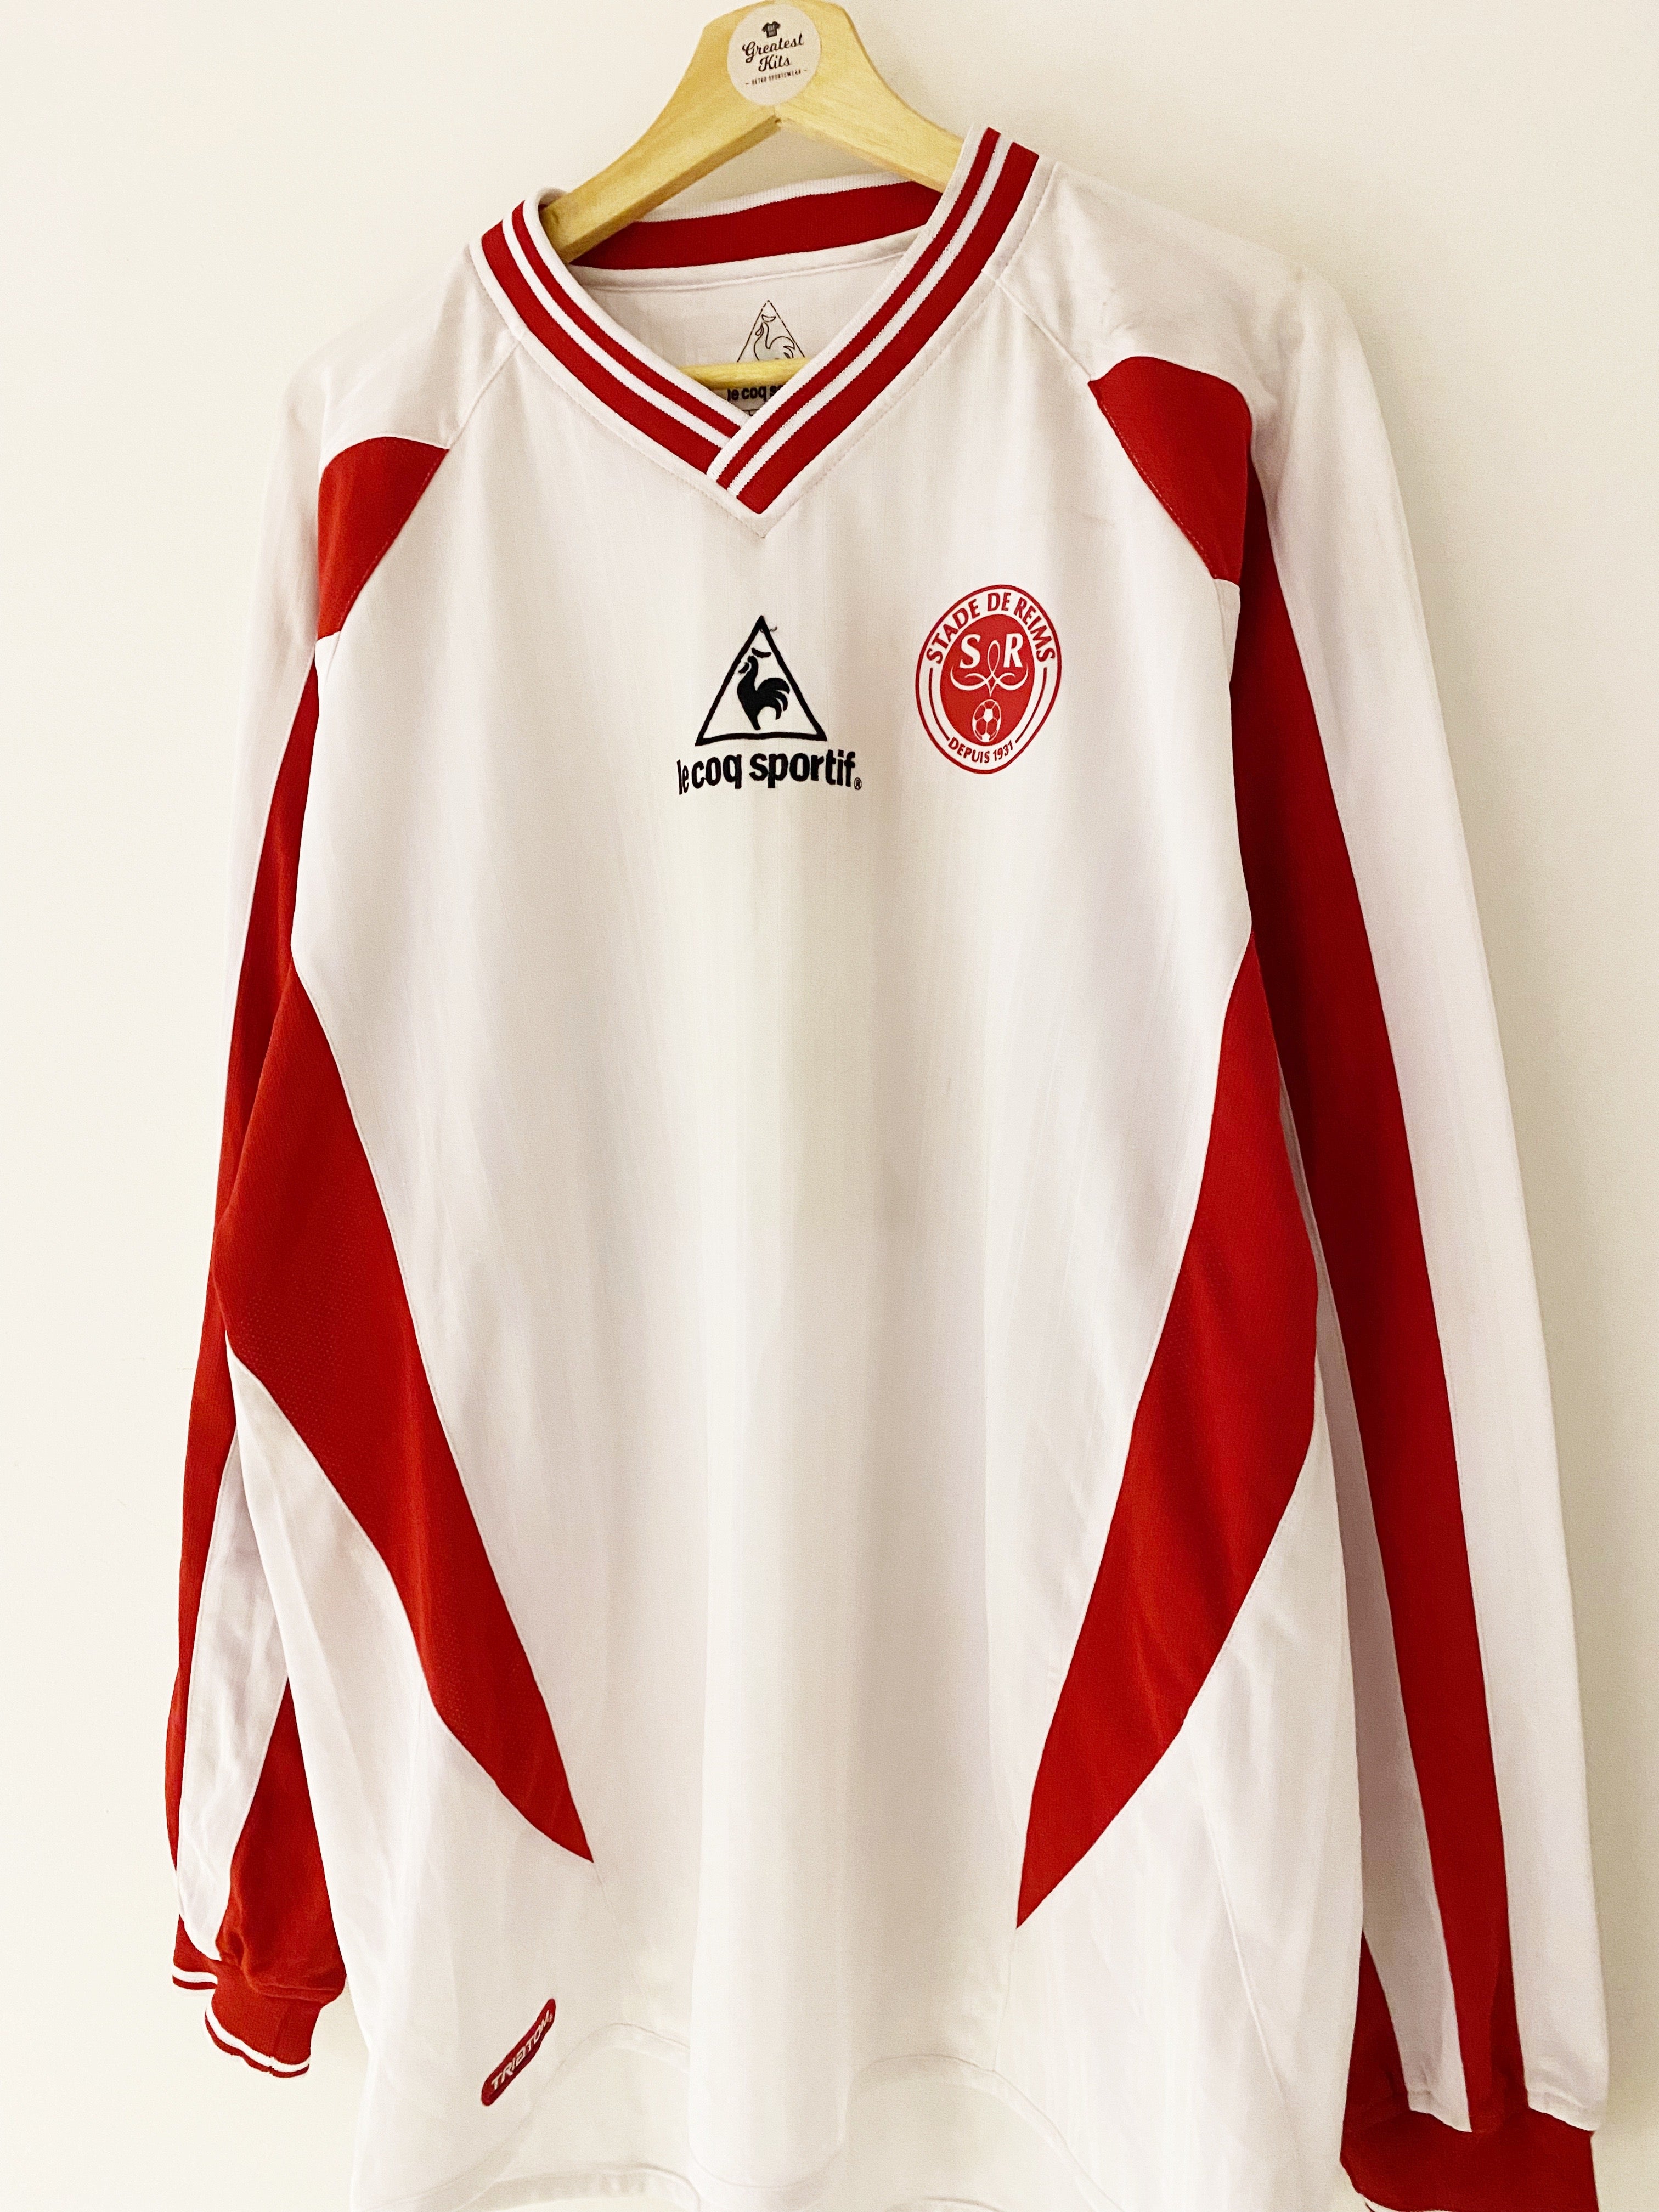 2002/03 Camiseta de visitante del Stade Reims L / S # 2 (XL) 9/10